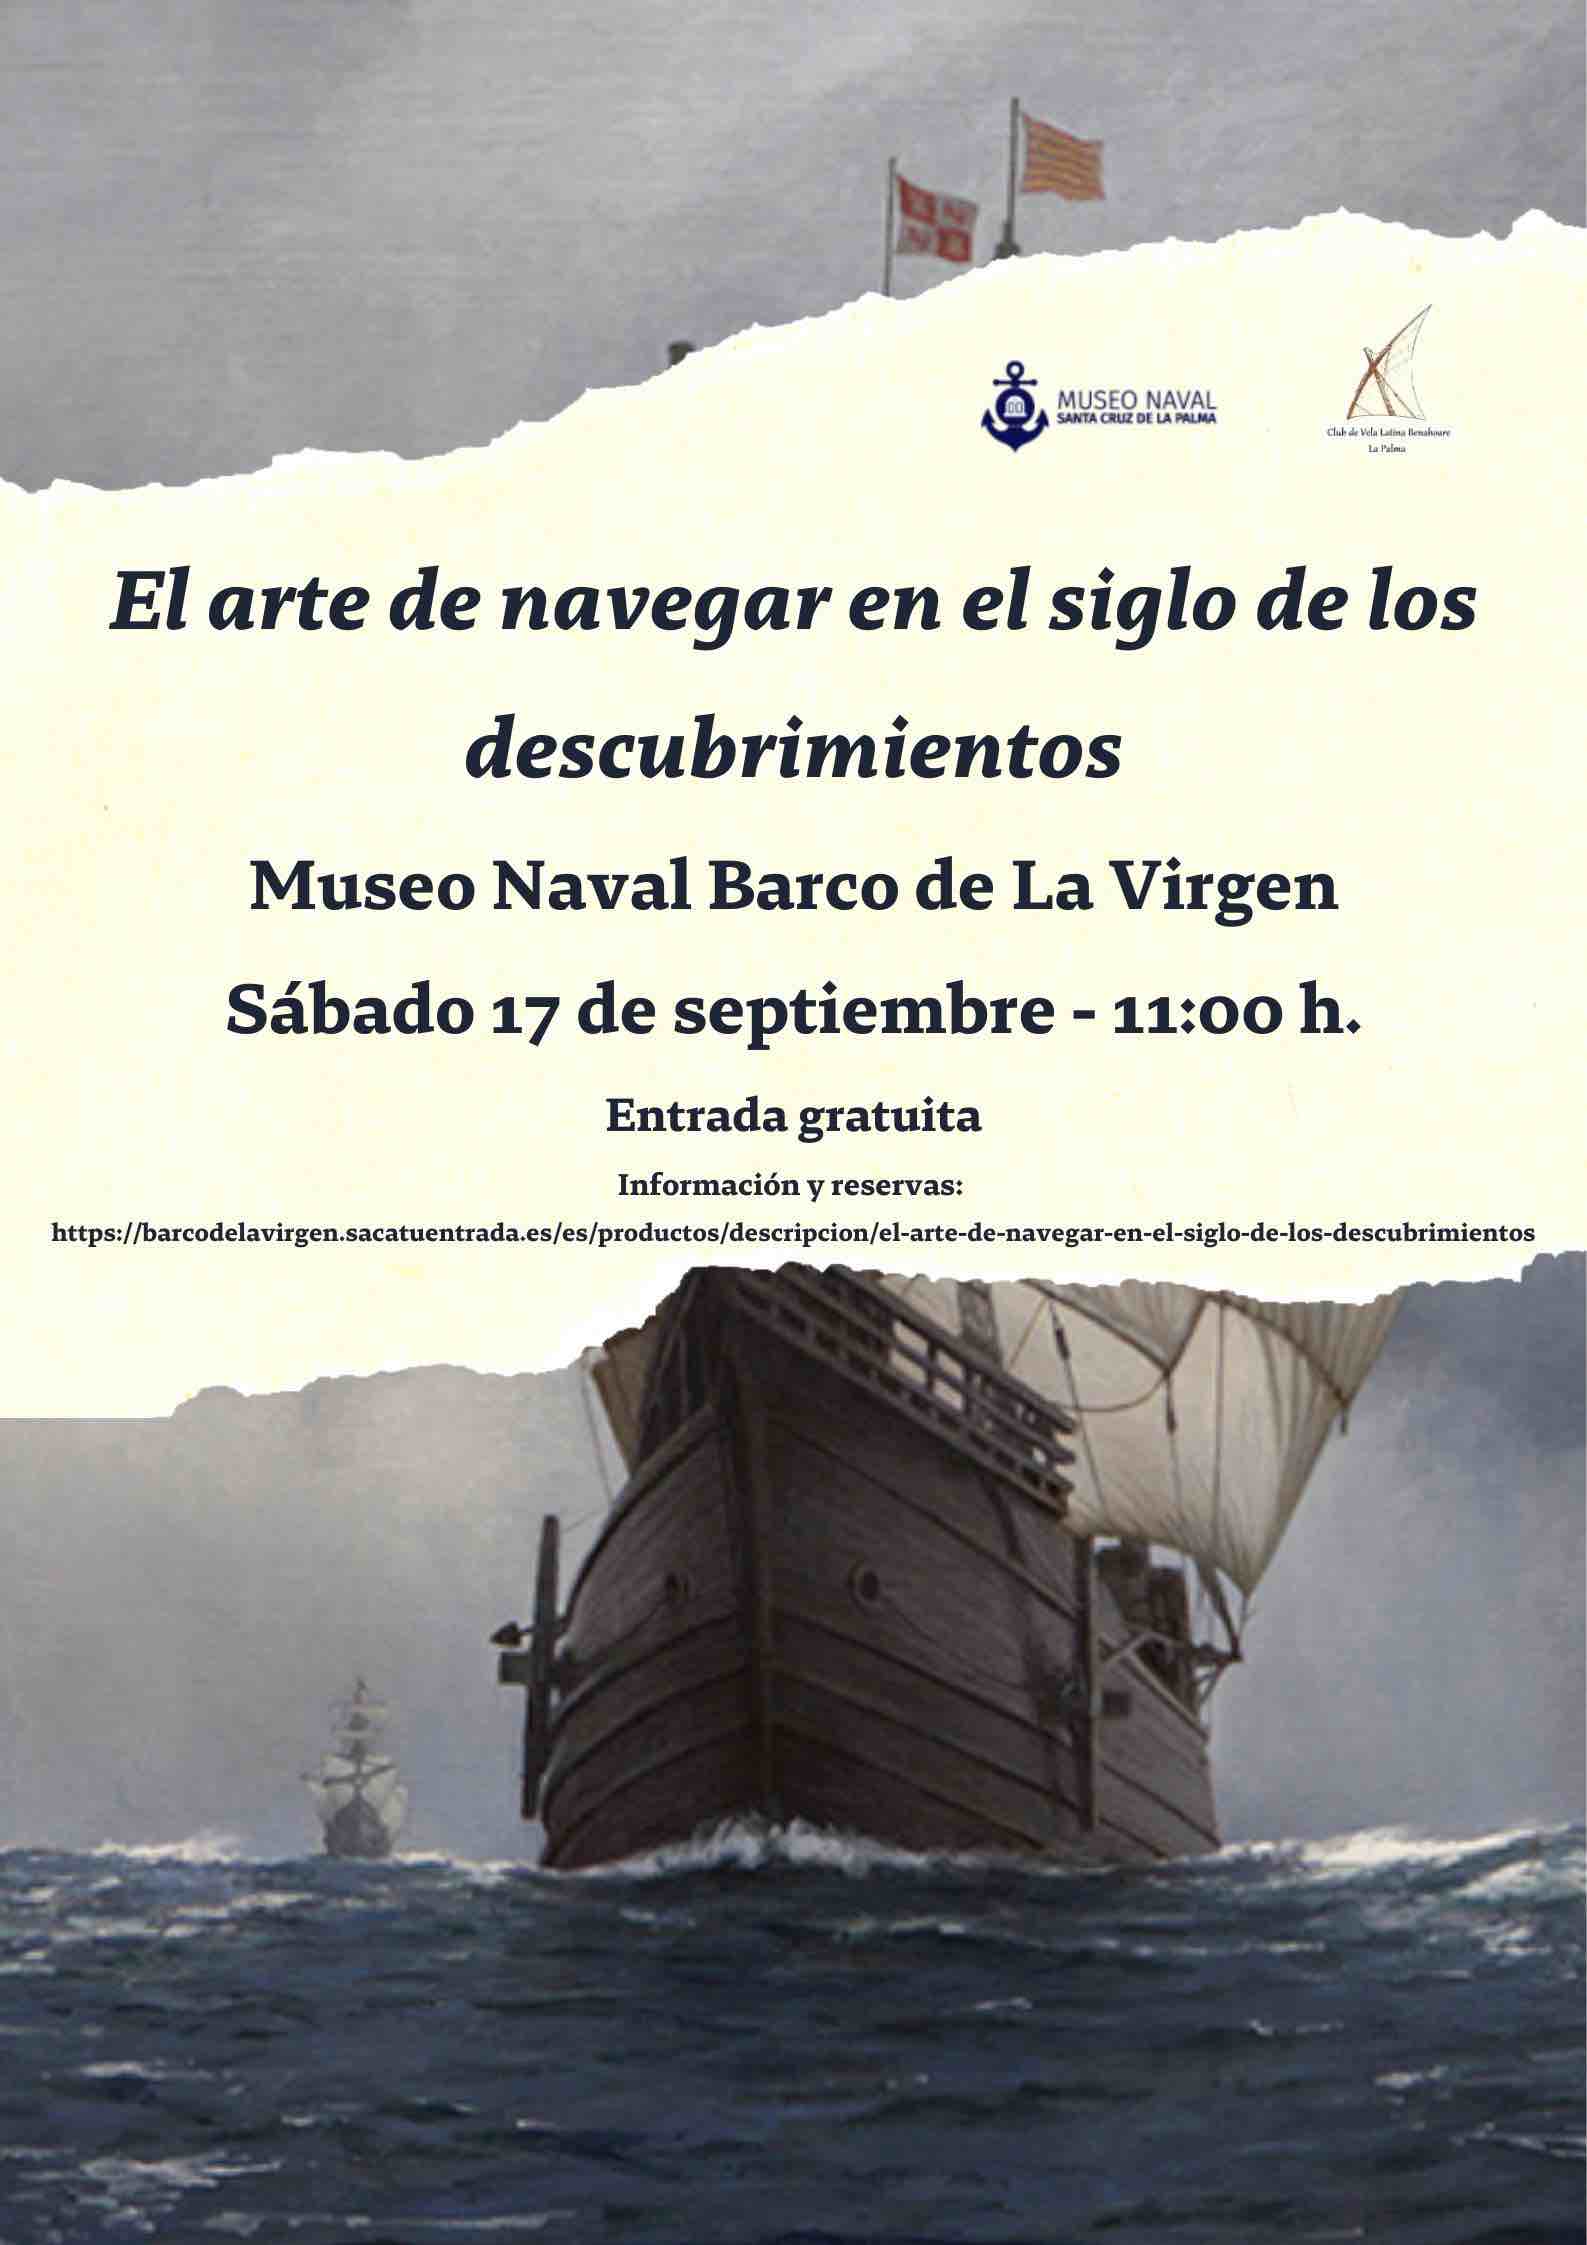 El Club de Vela Latina Benahoare  y el Museo Naval formalizan un convenio de colaboración